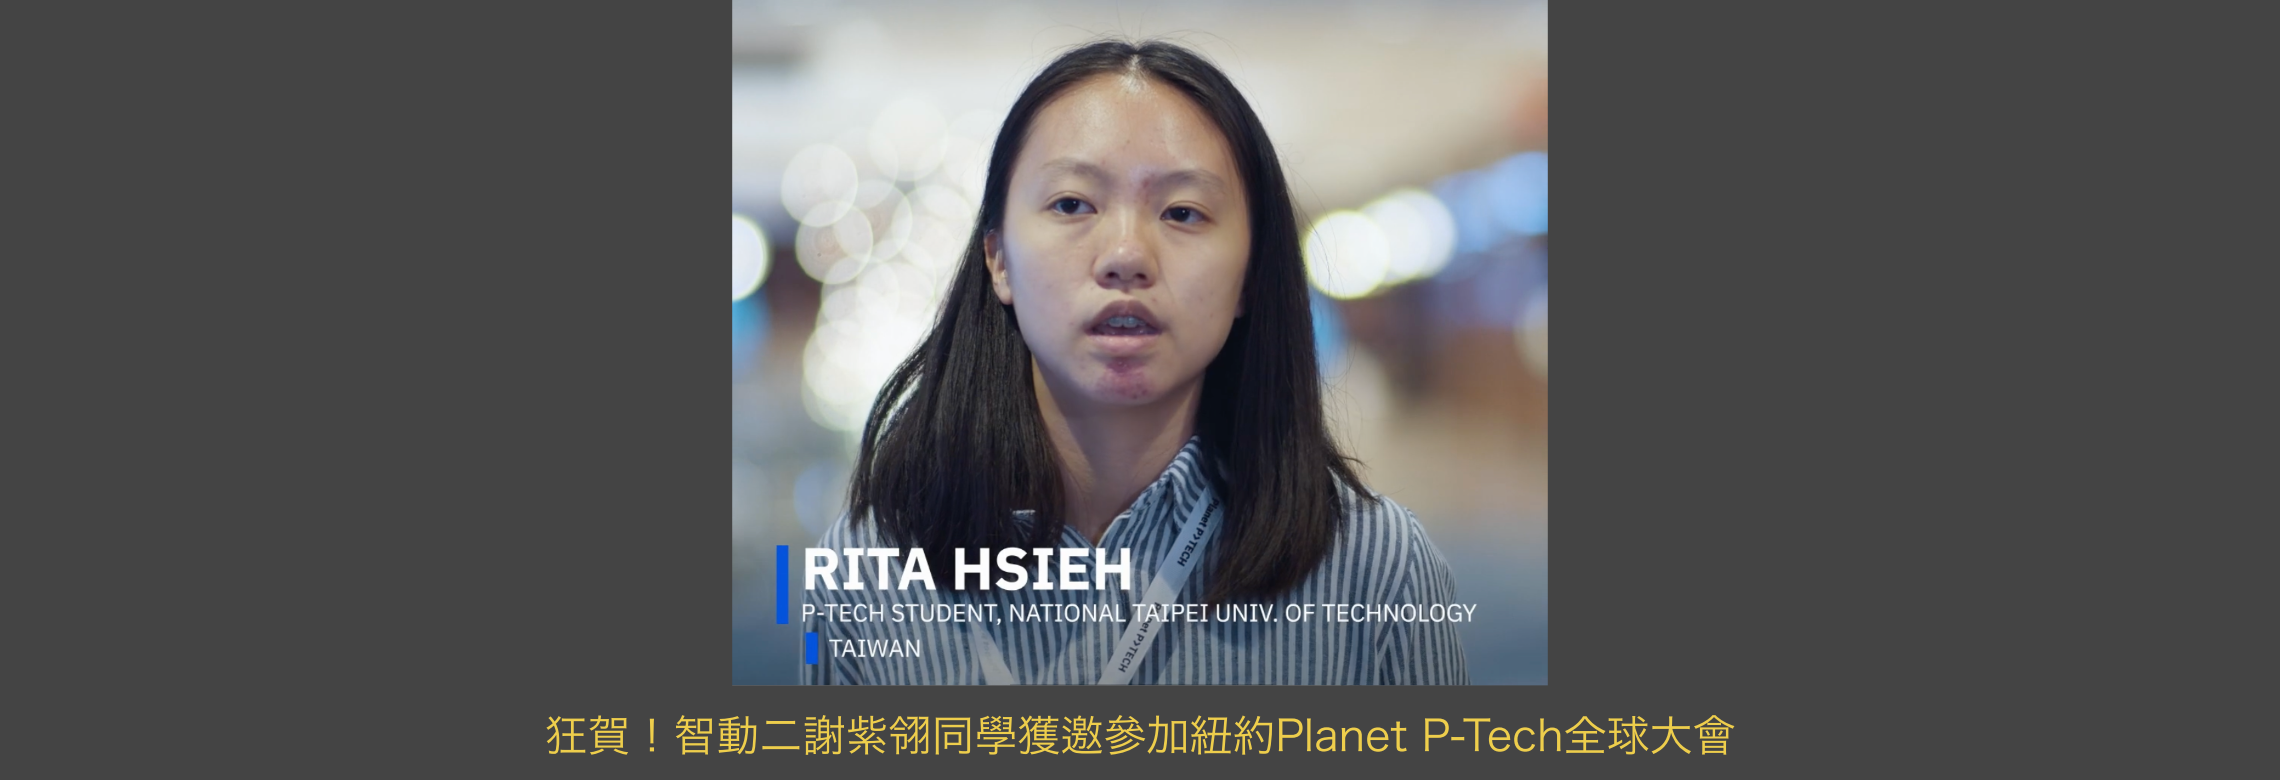 智動科專二謝紫翎獲邀參加紐約 Planet P-tech全球交流大會